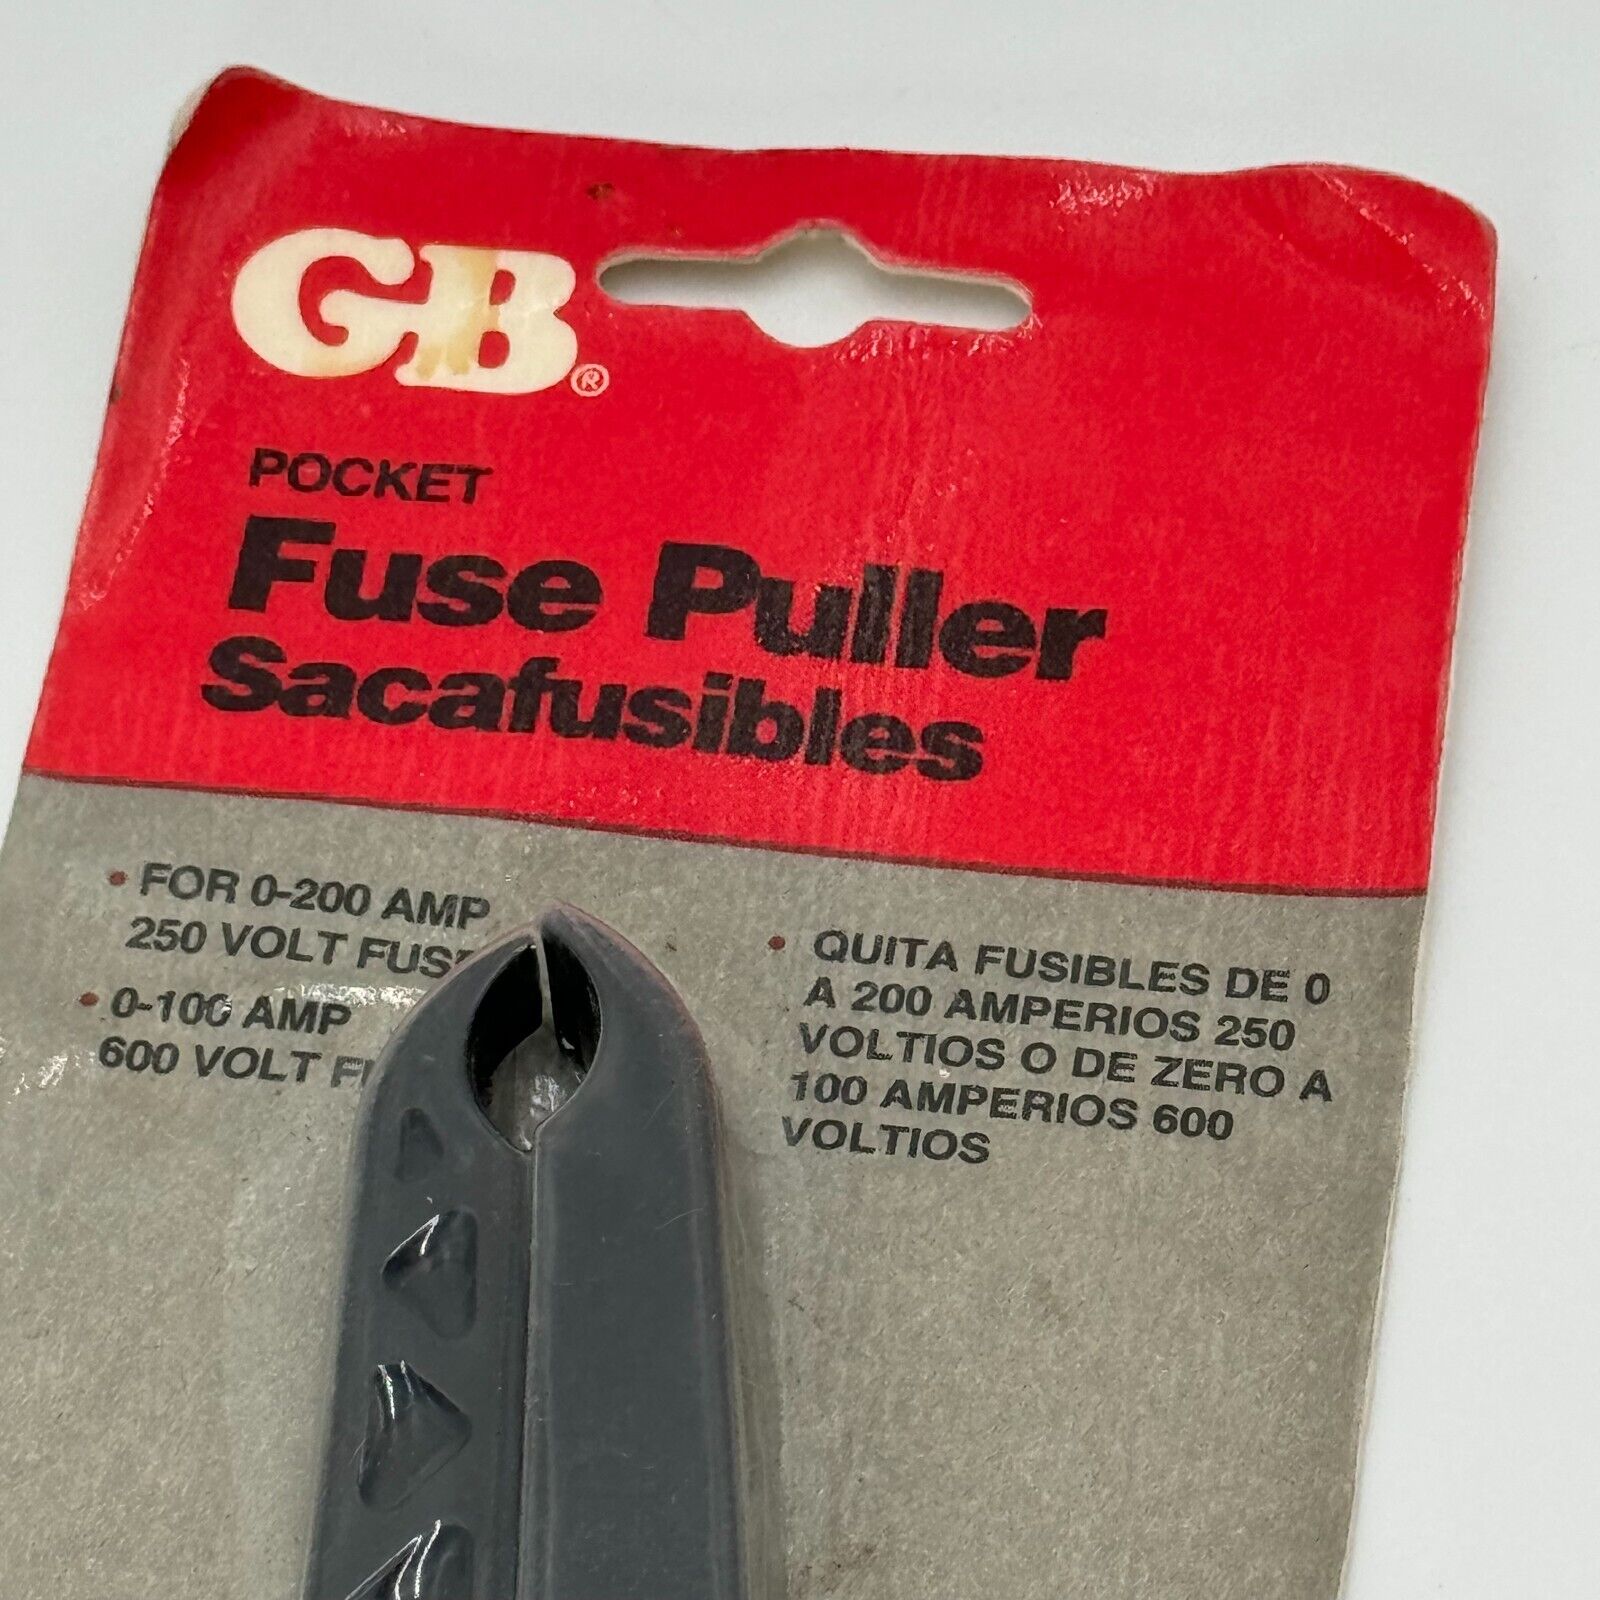 GB Pocket Fuse Puller for 0-200 AMP 250 Volt & 0-100 AMP 600 Volt Garden Bender